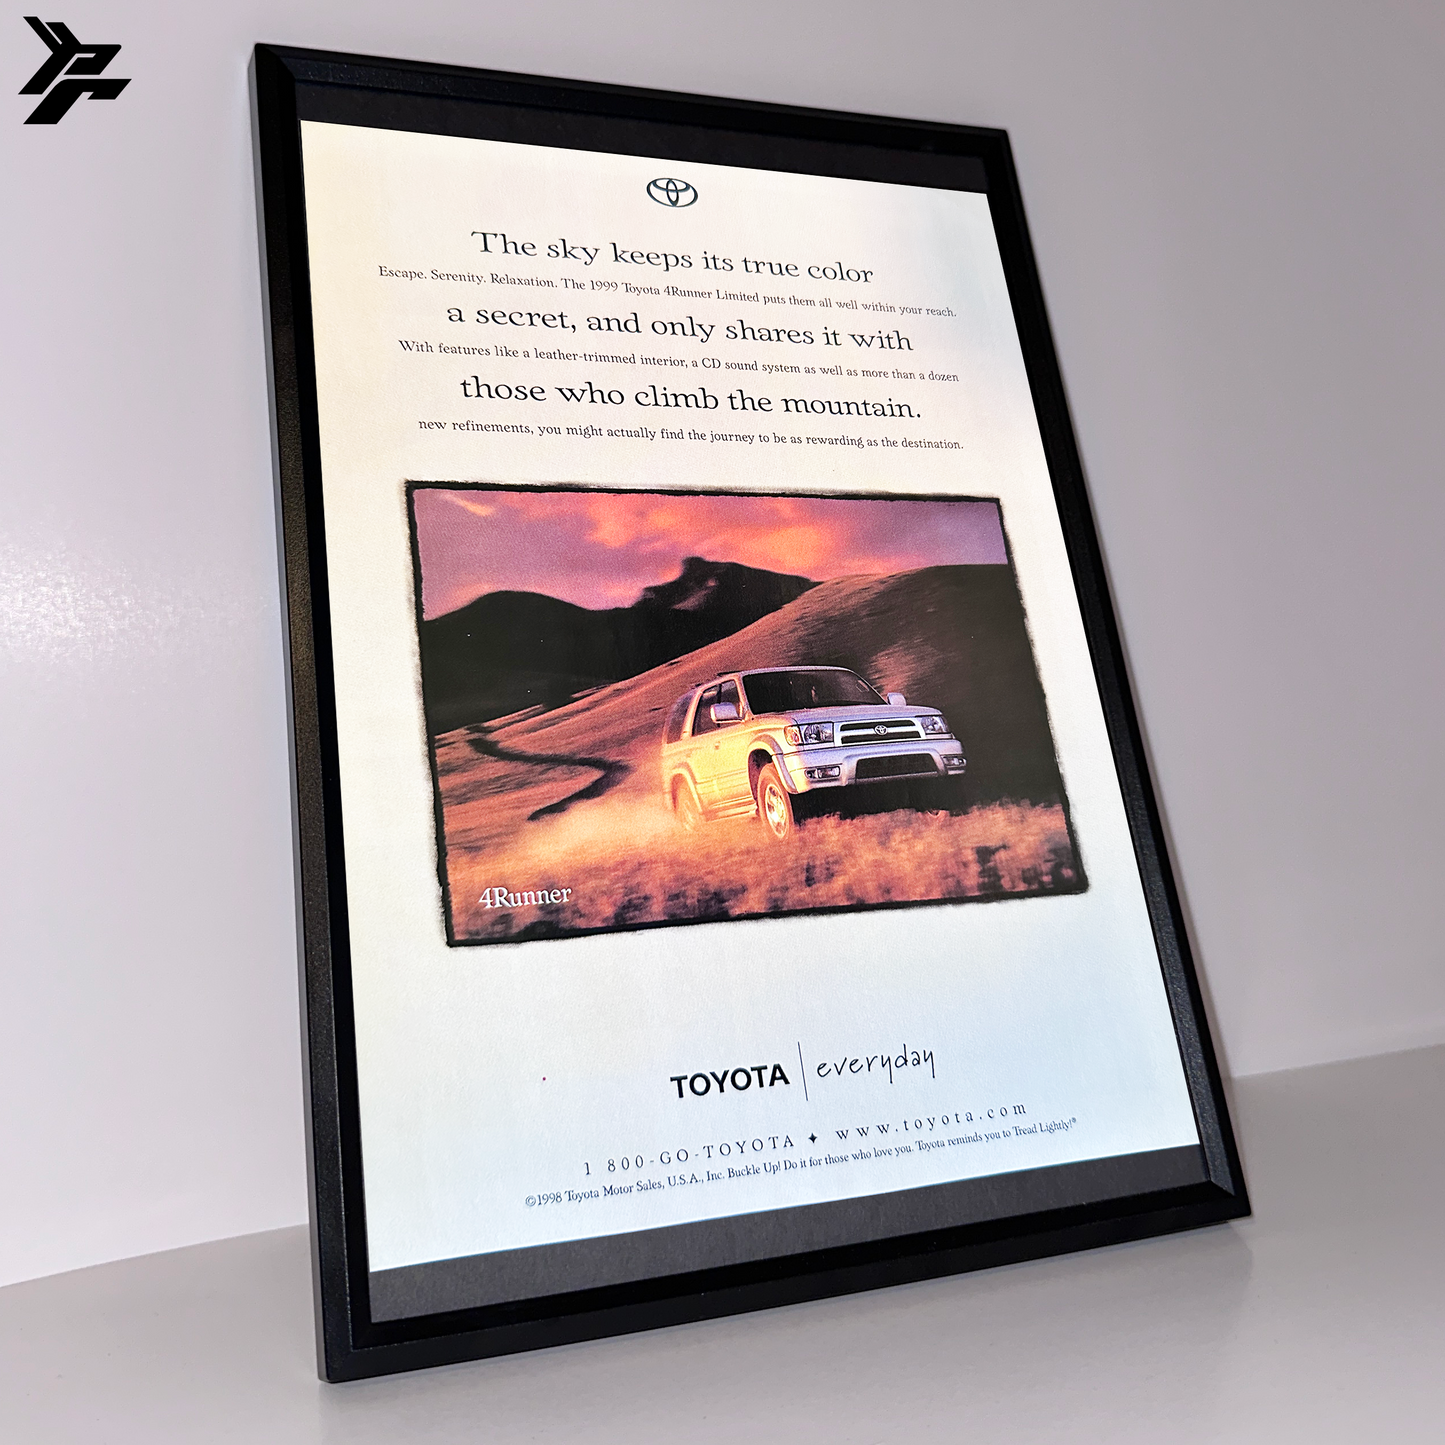 Toyota 4Runner everyday framed ad